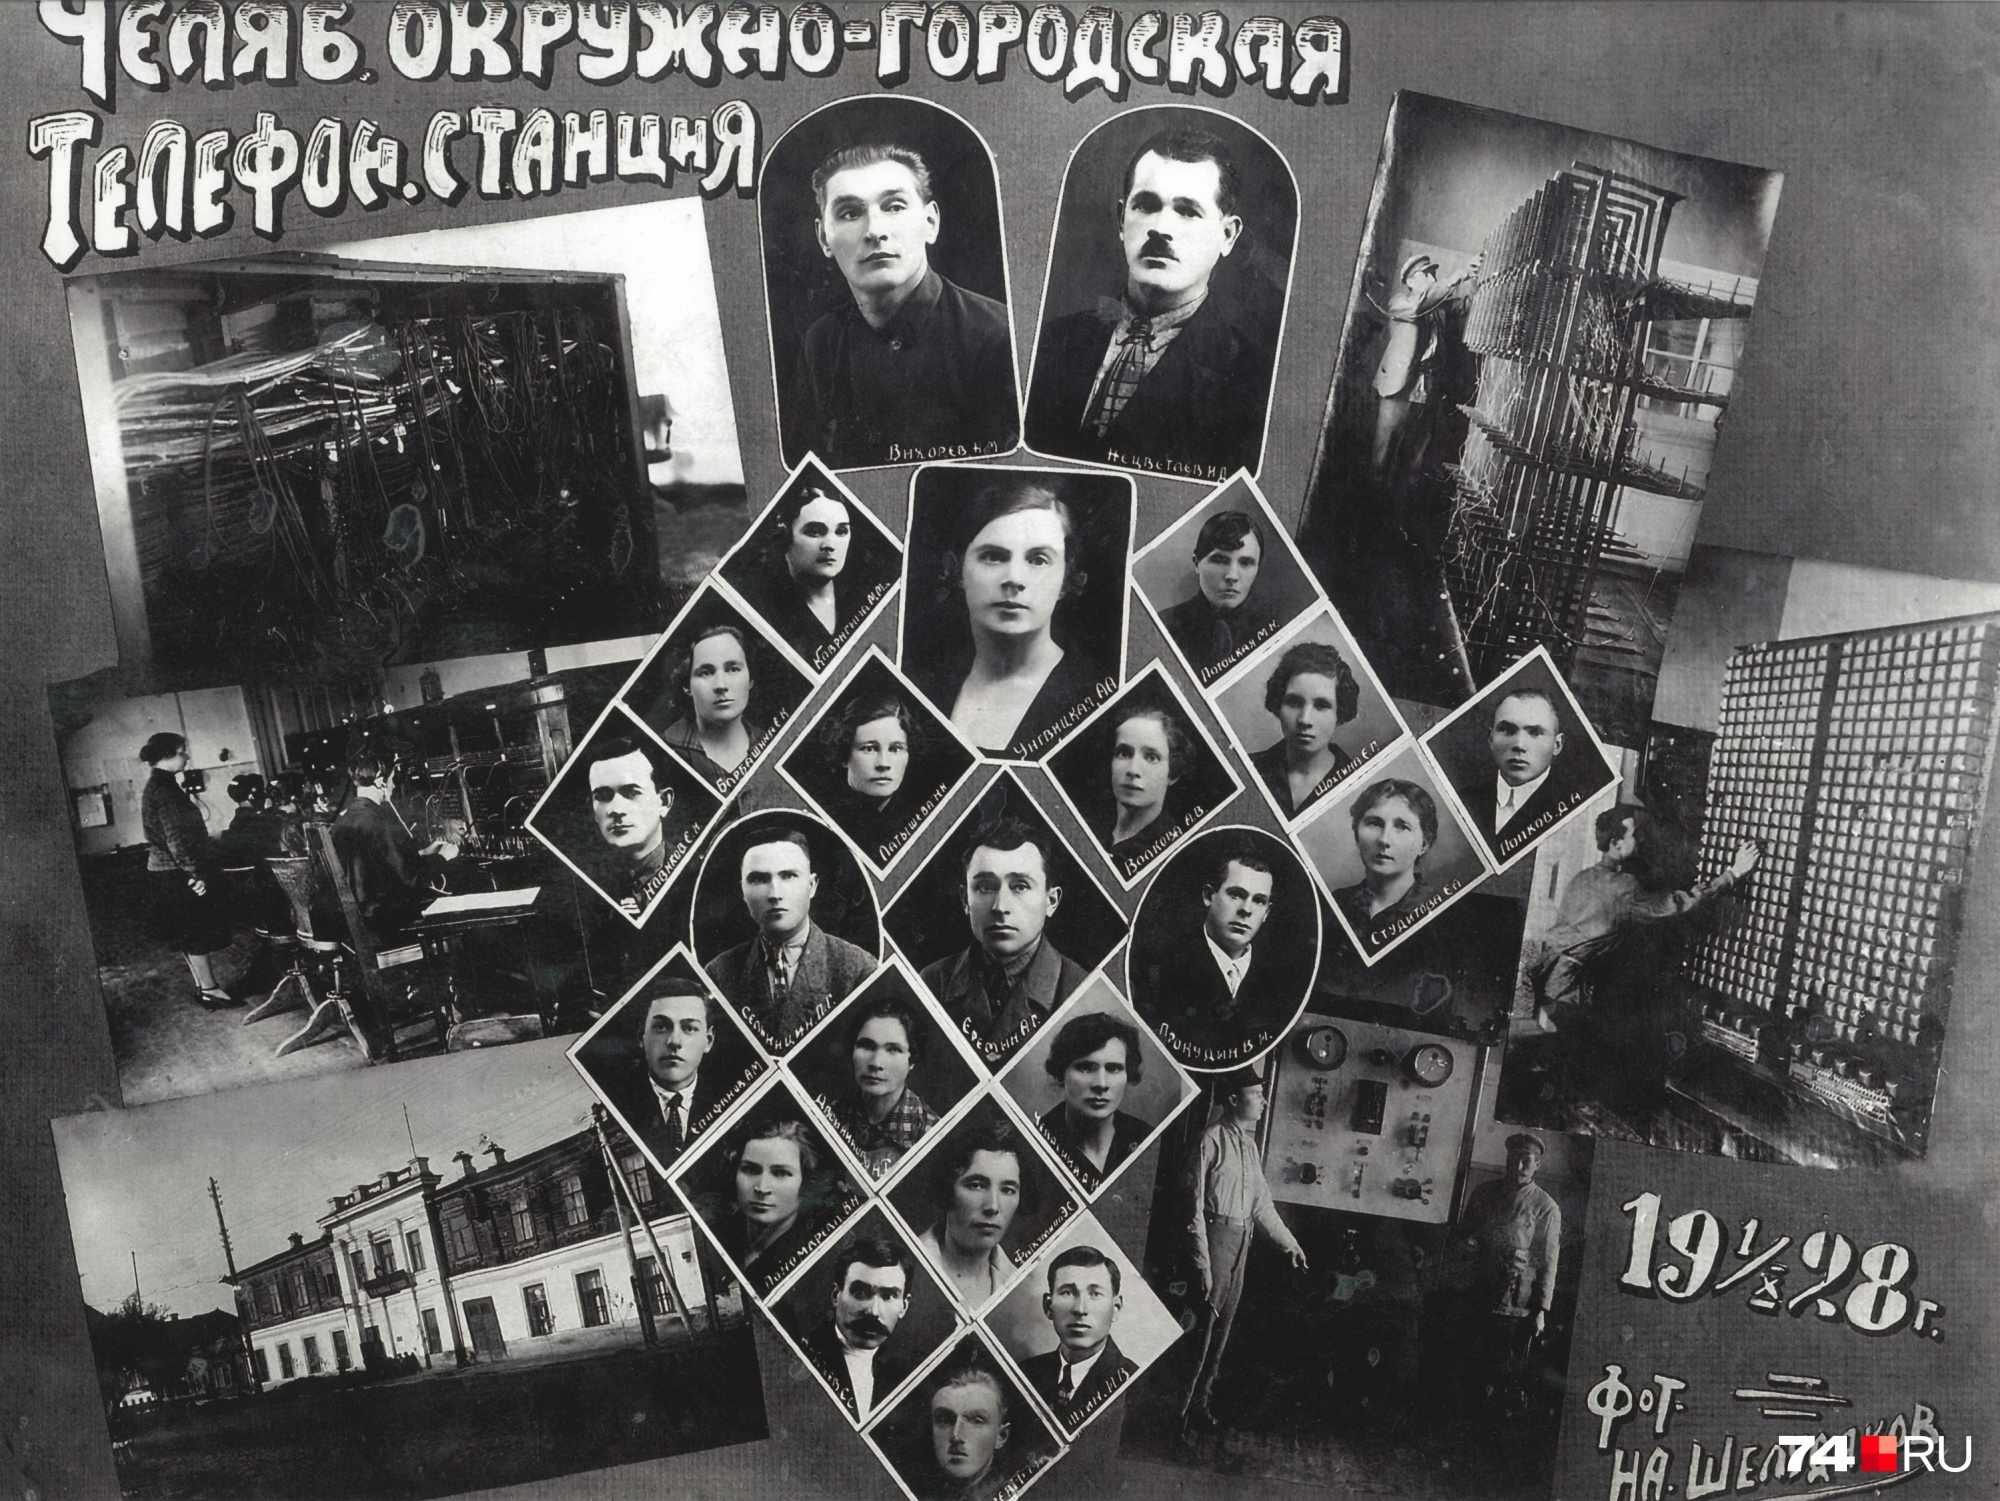 К 1928 году коллектив Челябинской городской телефонной станции вырос вдвое. На этом фотомонтаже видно, в каких условиях трудились сотрудники